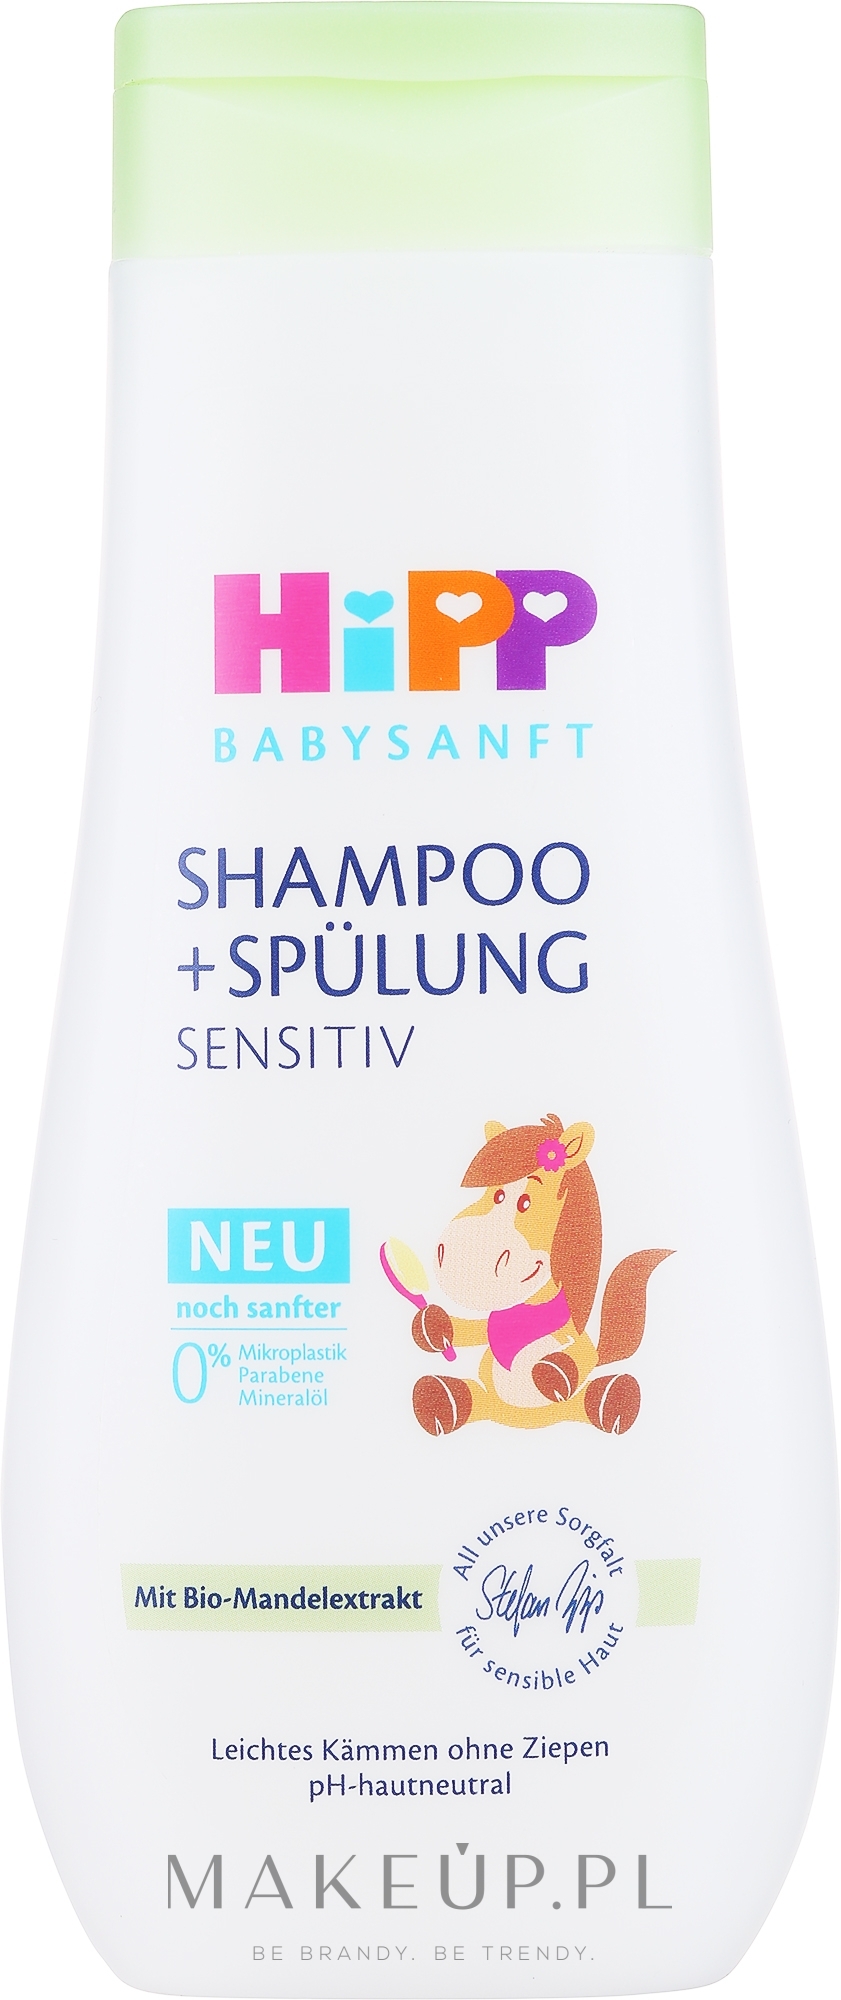 hipp hipoalergiczny szampon dla dzieci